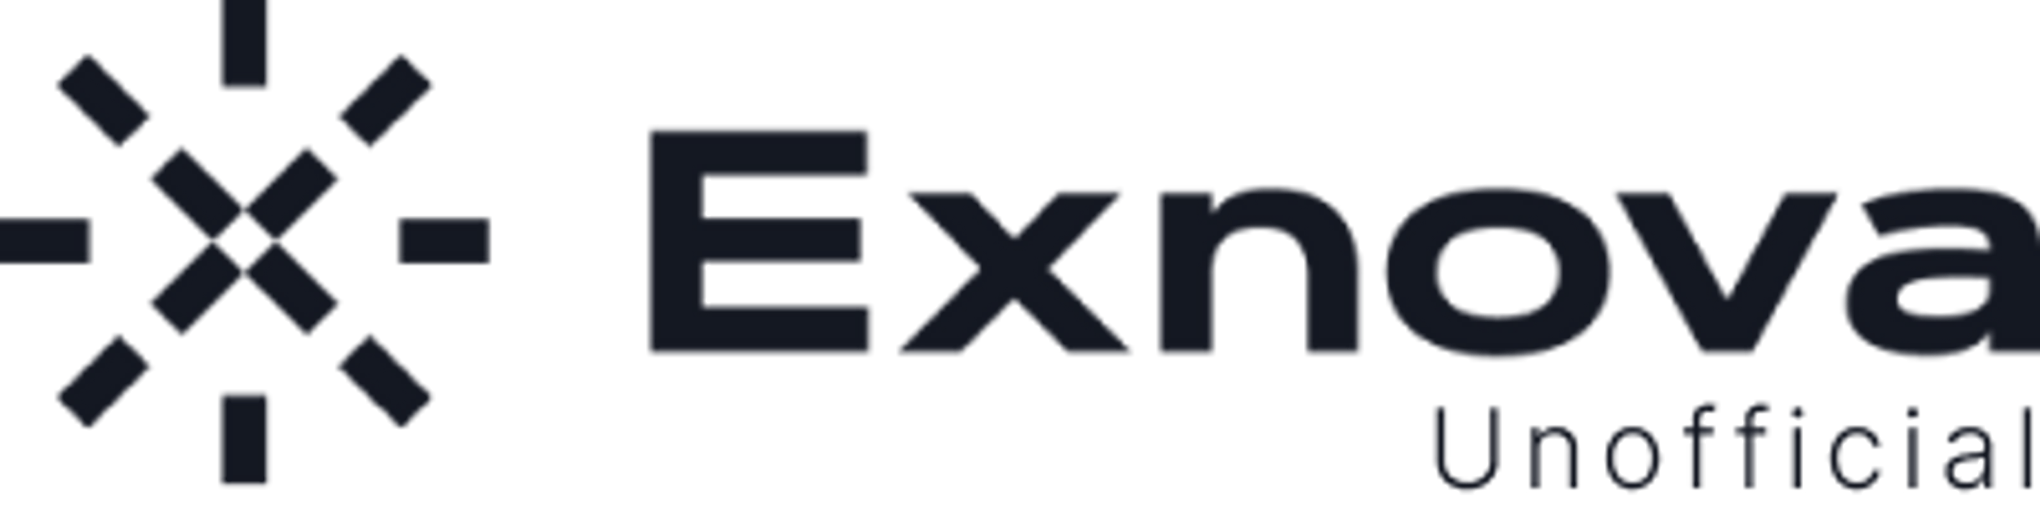 Exnova logo